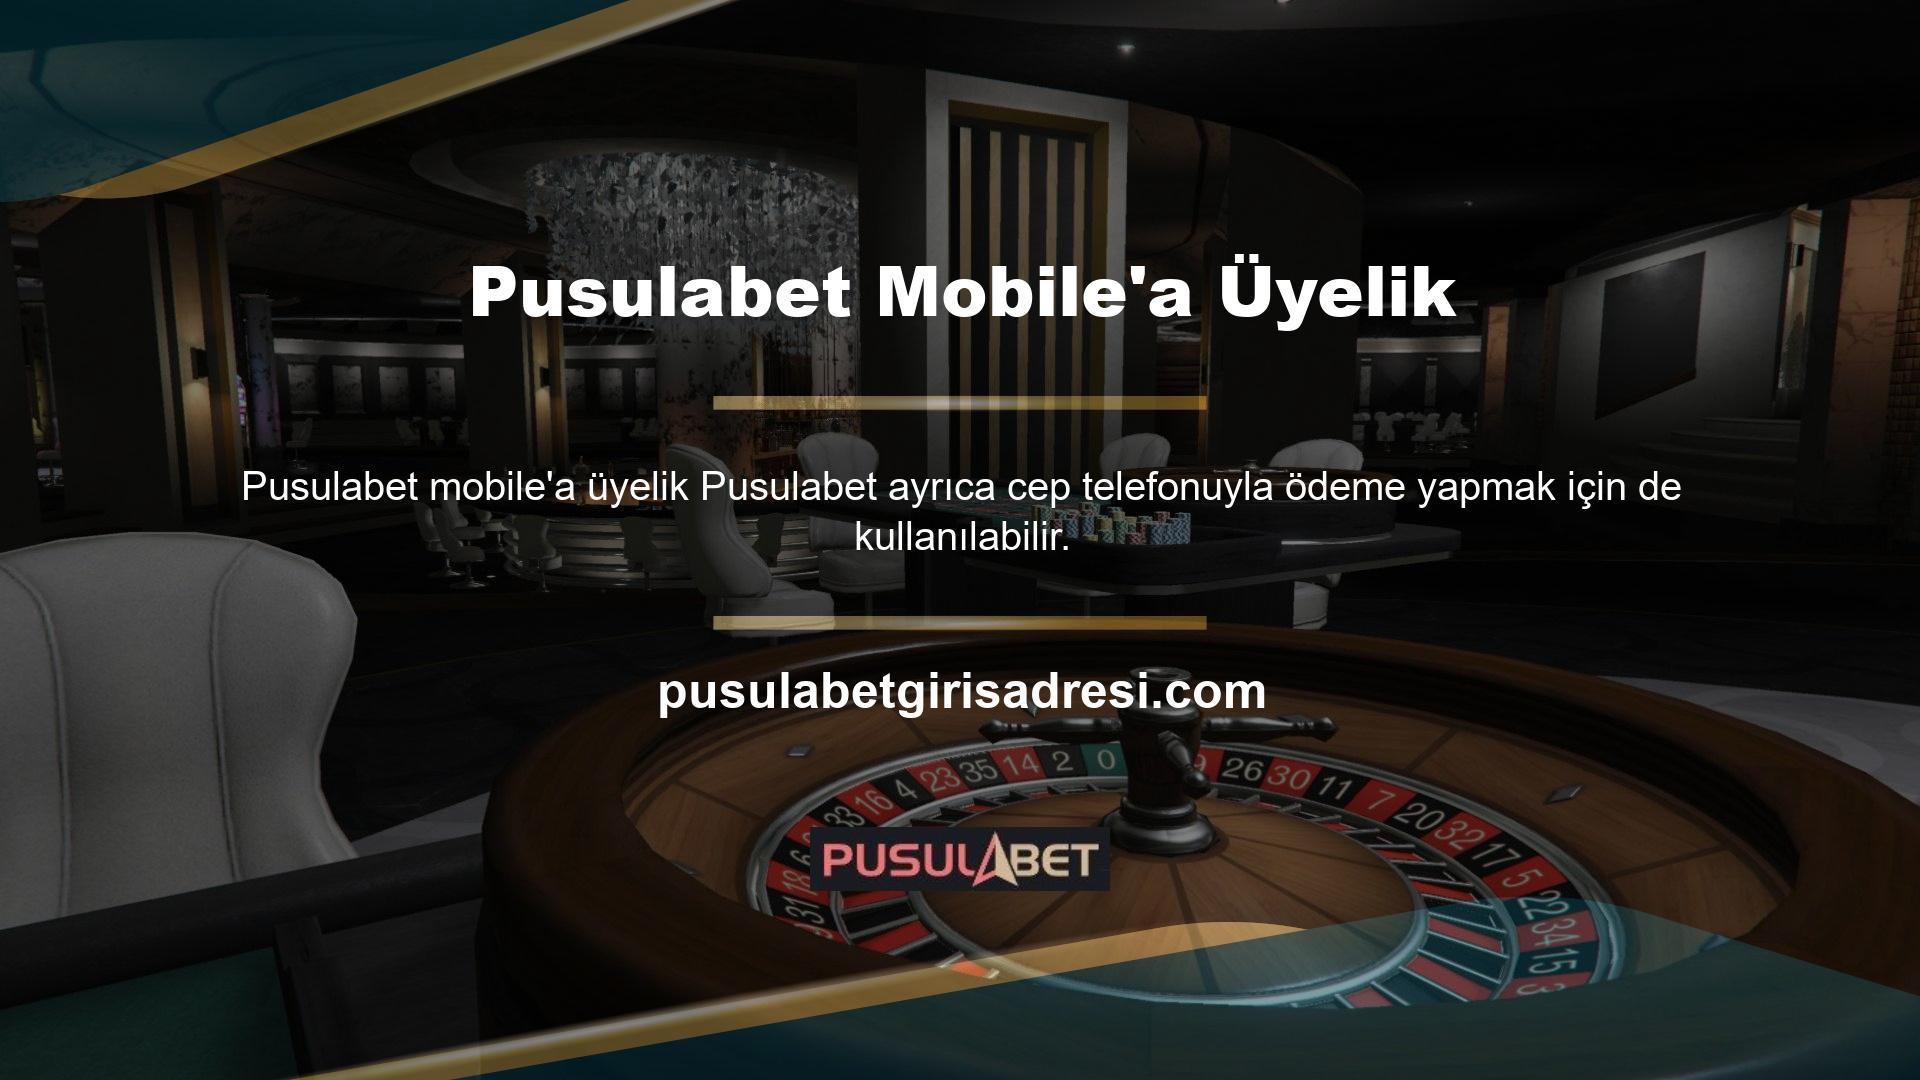 Mobil ana sayfada Pusulabet mobil üyeliği için bir kayıt düğmesi mevcuttur